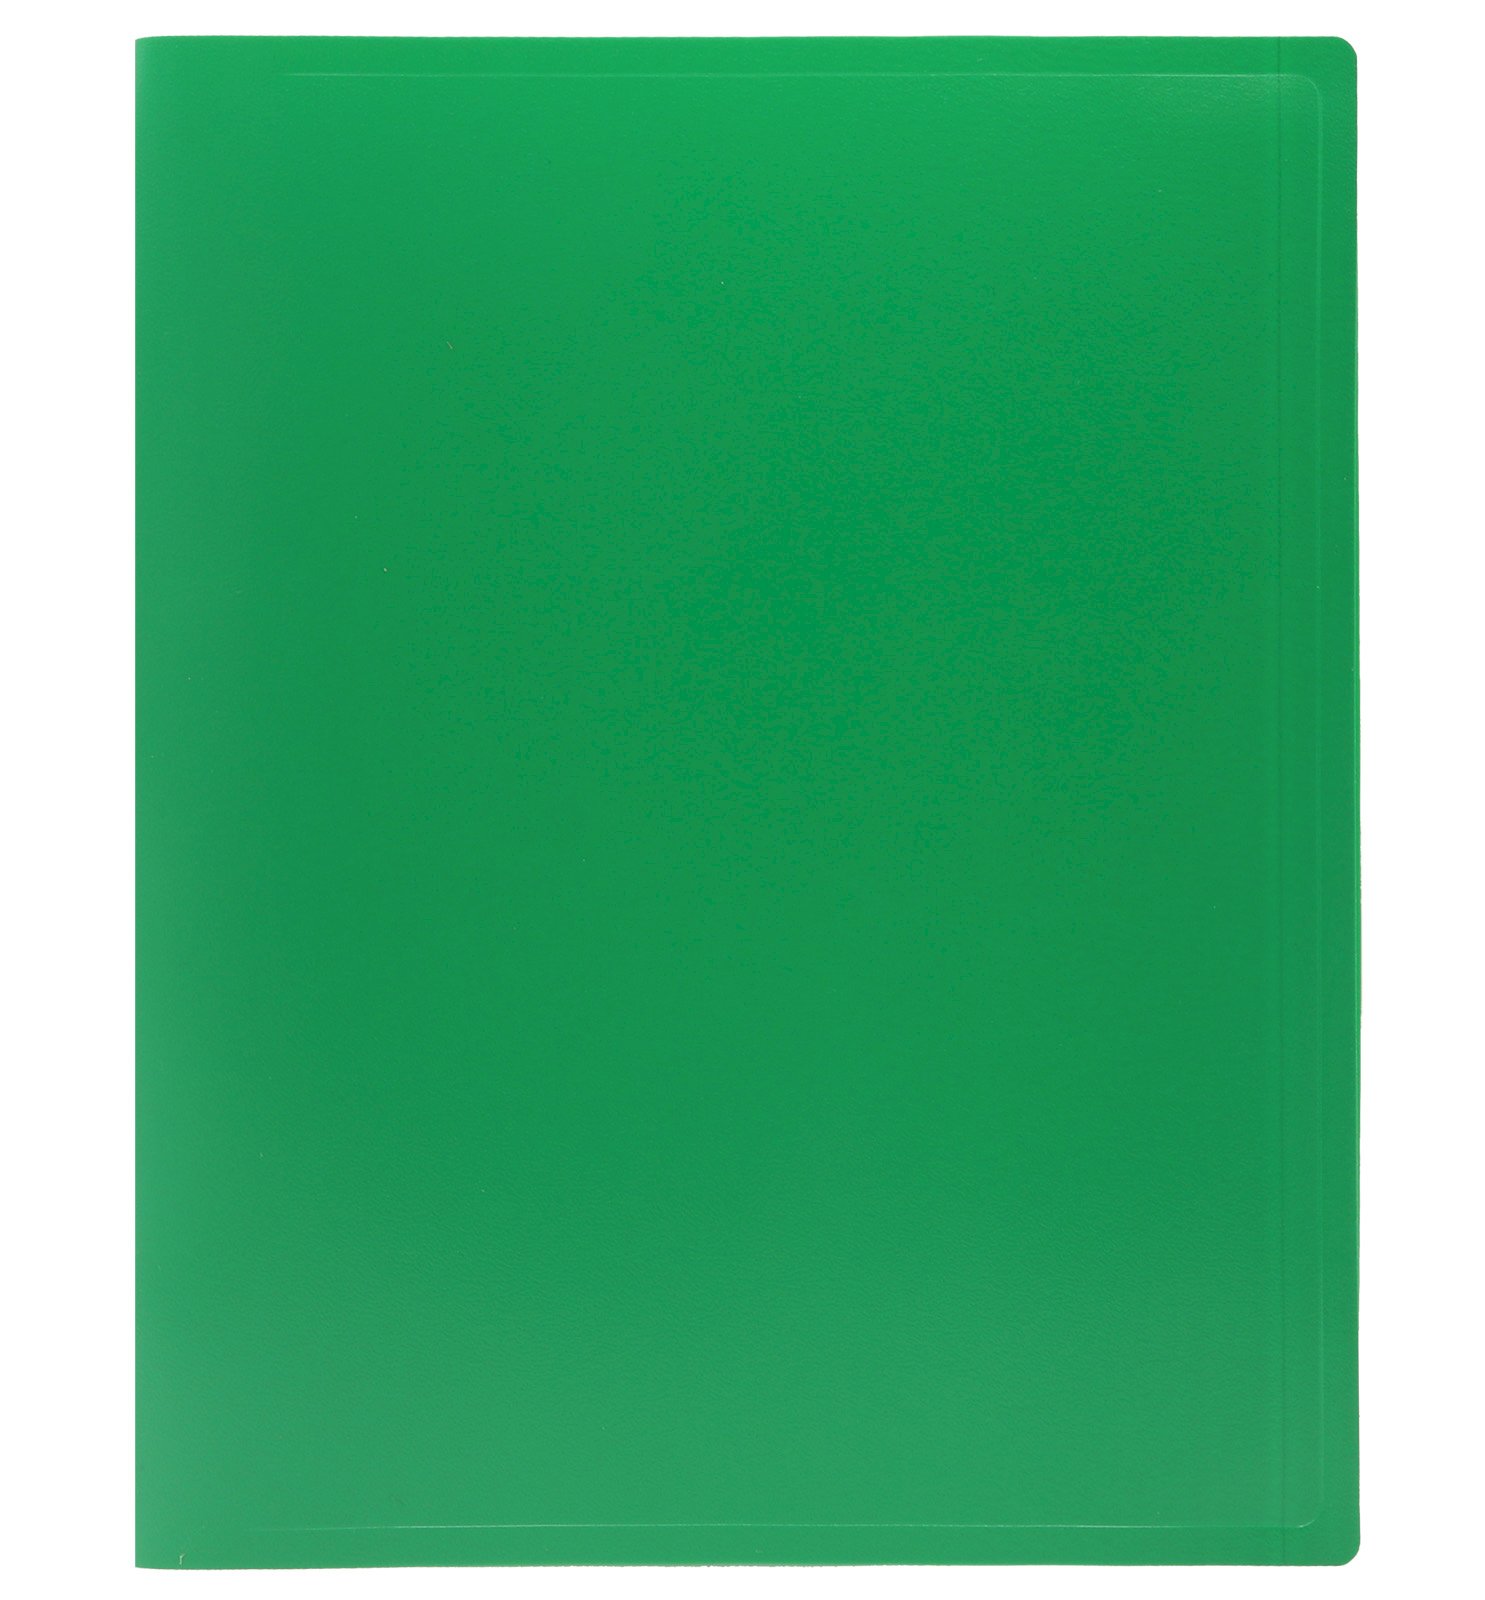 Папка с пружинным скоросшивателем Workmate выполнена из пластика толщиной 500 мкм зеленого цвета. Предназначена для хранения документов формата А4. Надежно защищает бумаги от механического повреждения и загрязнений. Ширина корешка 15 мм.